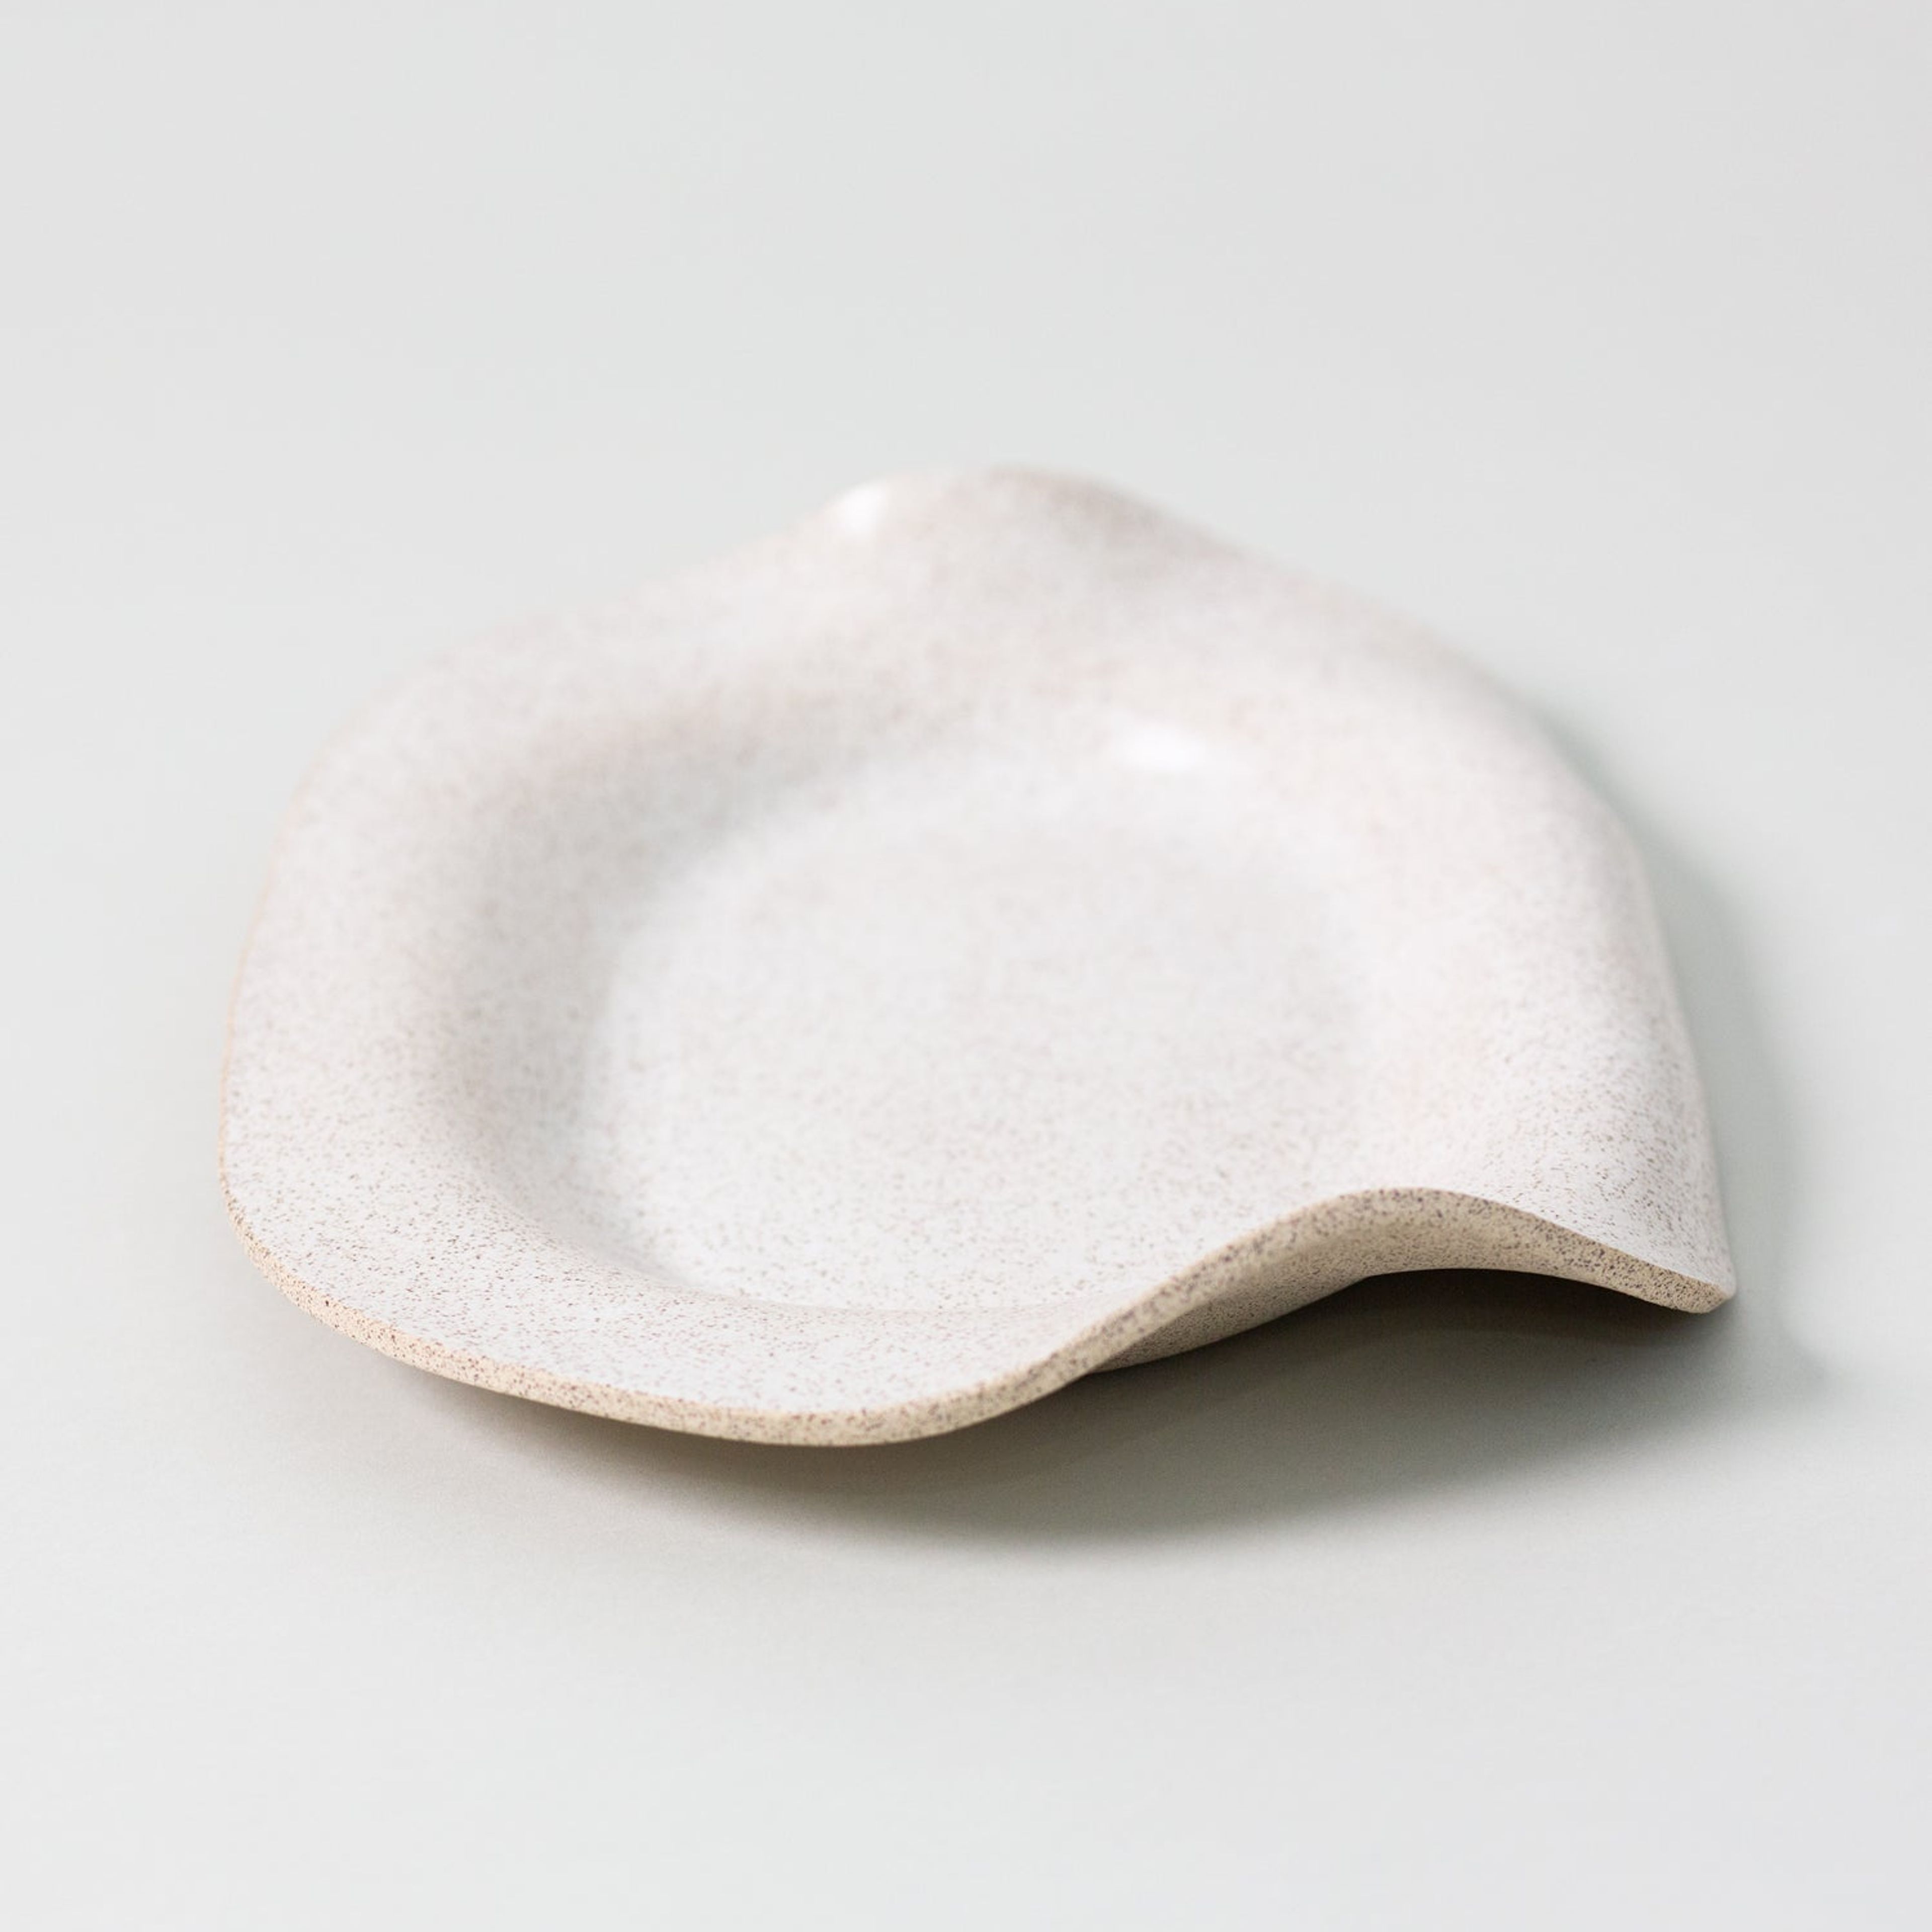 Manta Oval Platter, Pebble